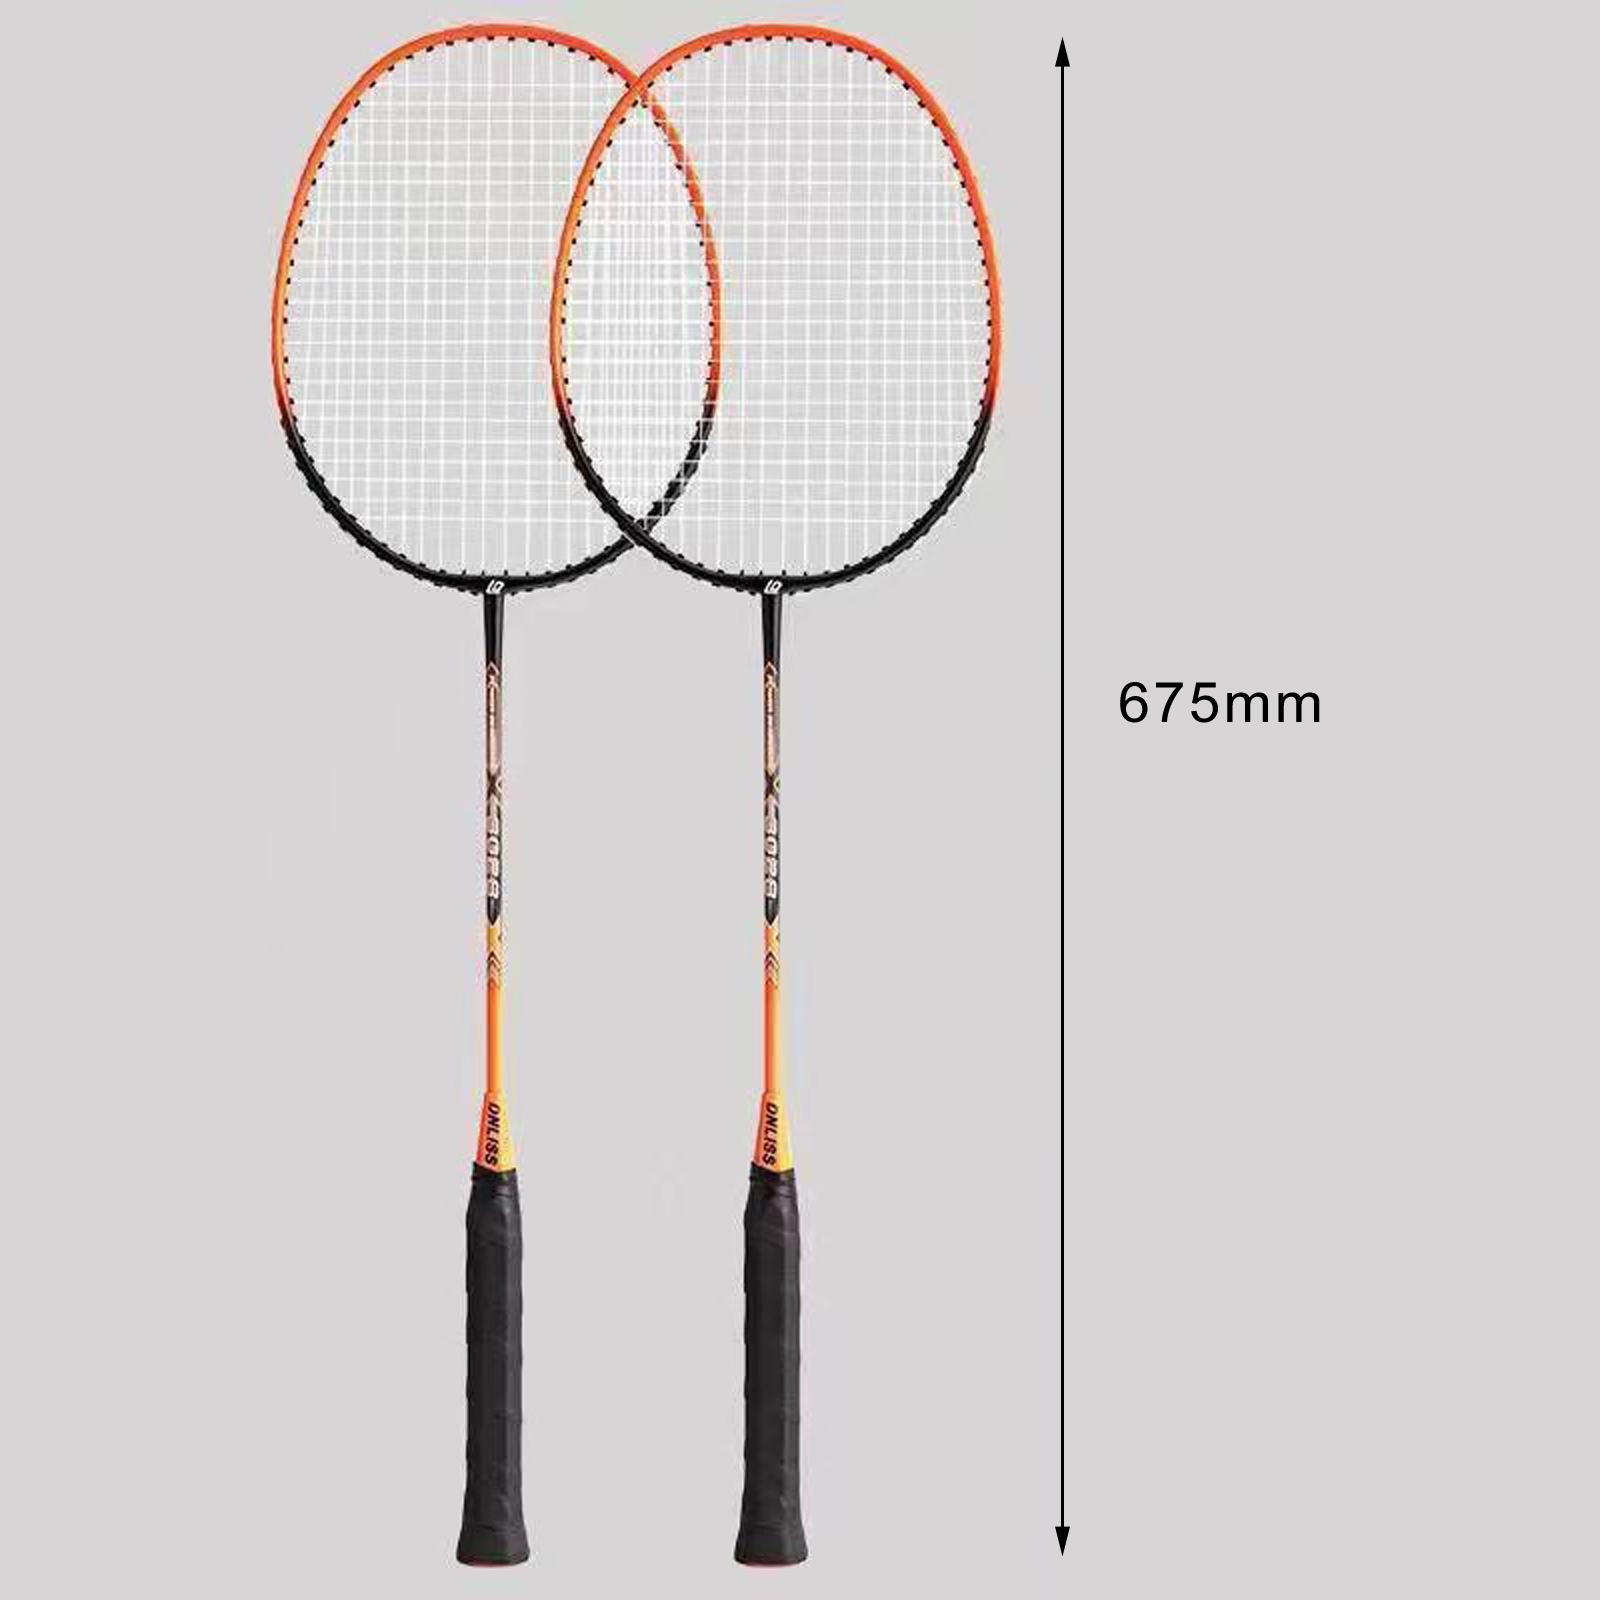 2x Badminton Rackets Lightweight Tennis Racquets for Lawn Gym Indoor Outdoor Orange